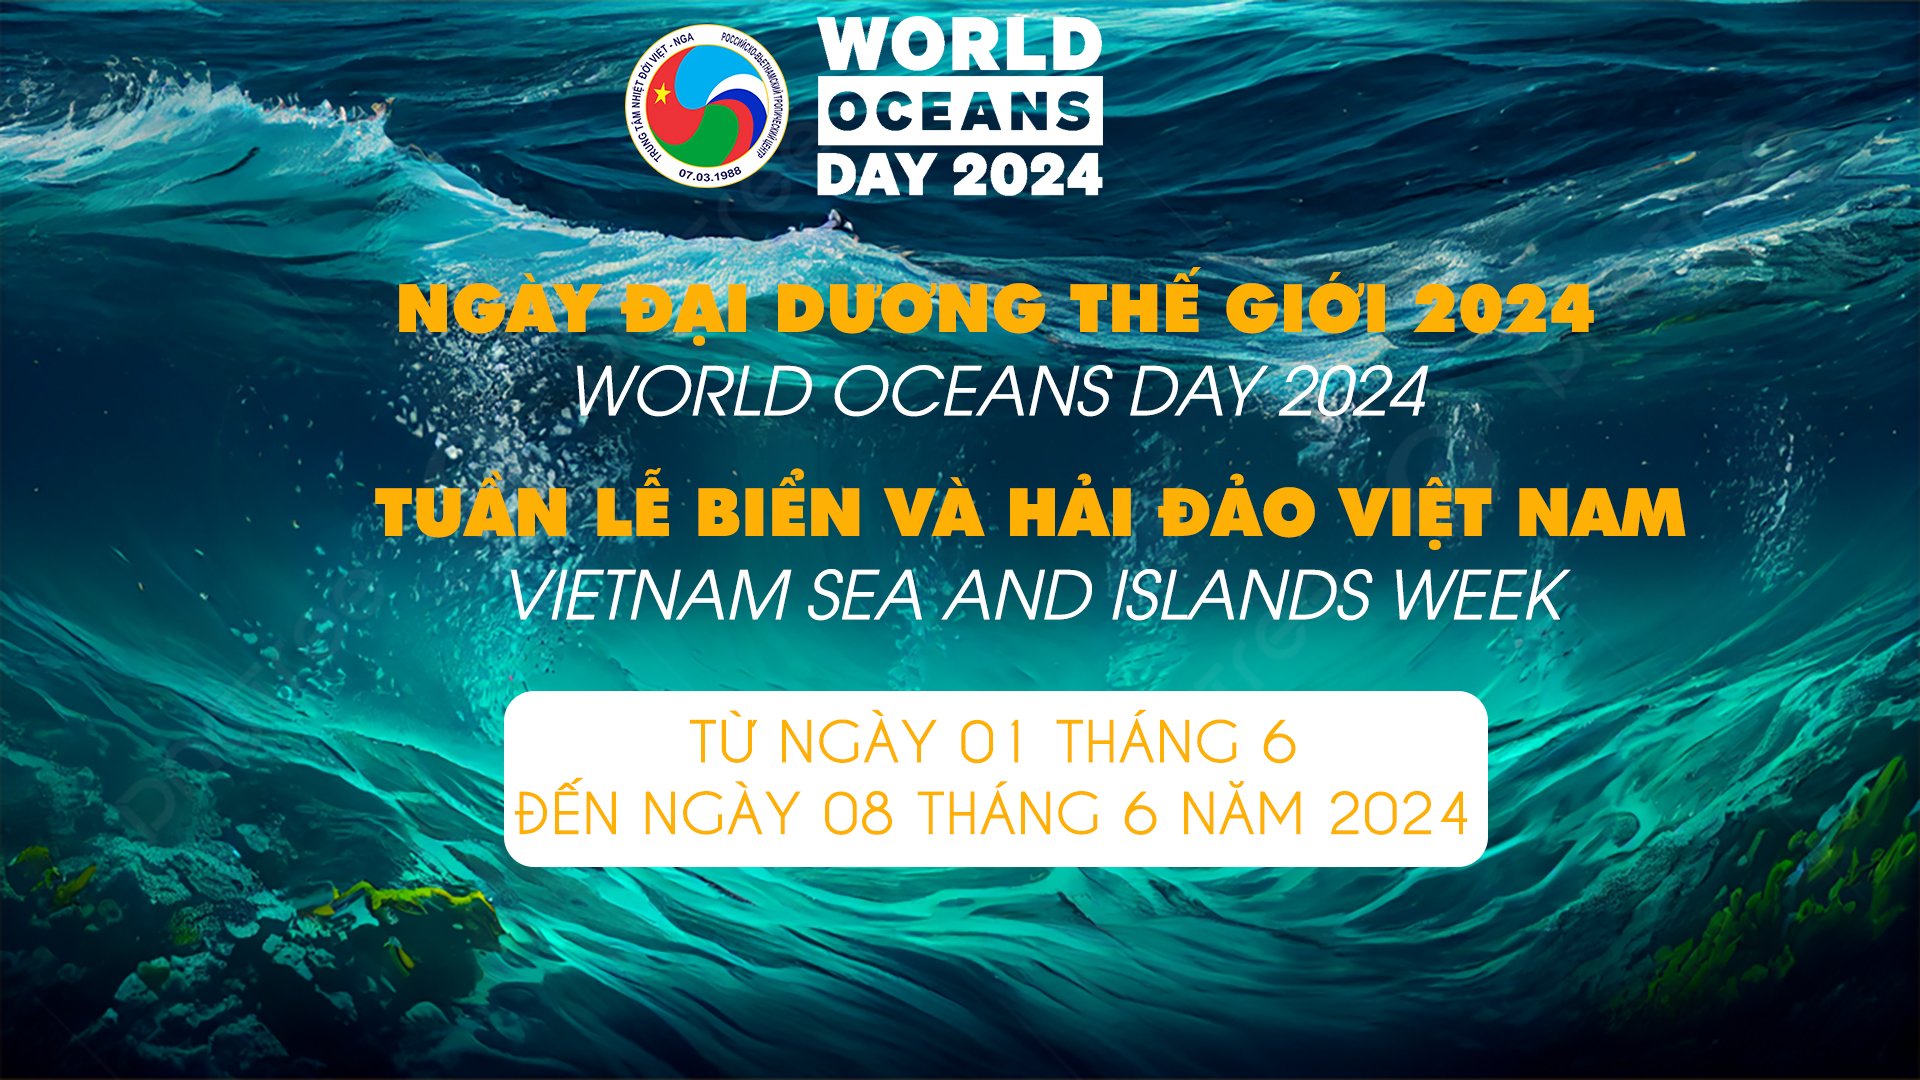 Trung tâm Nhiệt đới Việt - Nga hưởng ứng Ngày Đại dương thế giới năm 2024 và Tuần lễ Biển và Hải đảo Việt Nam